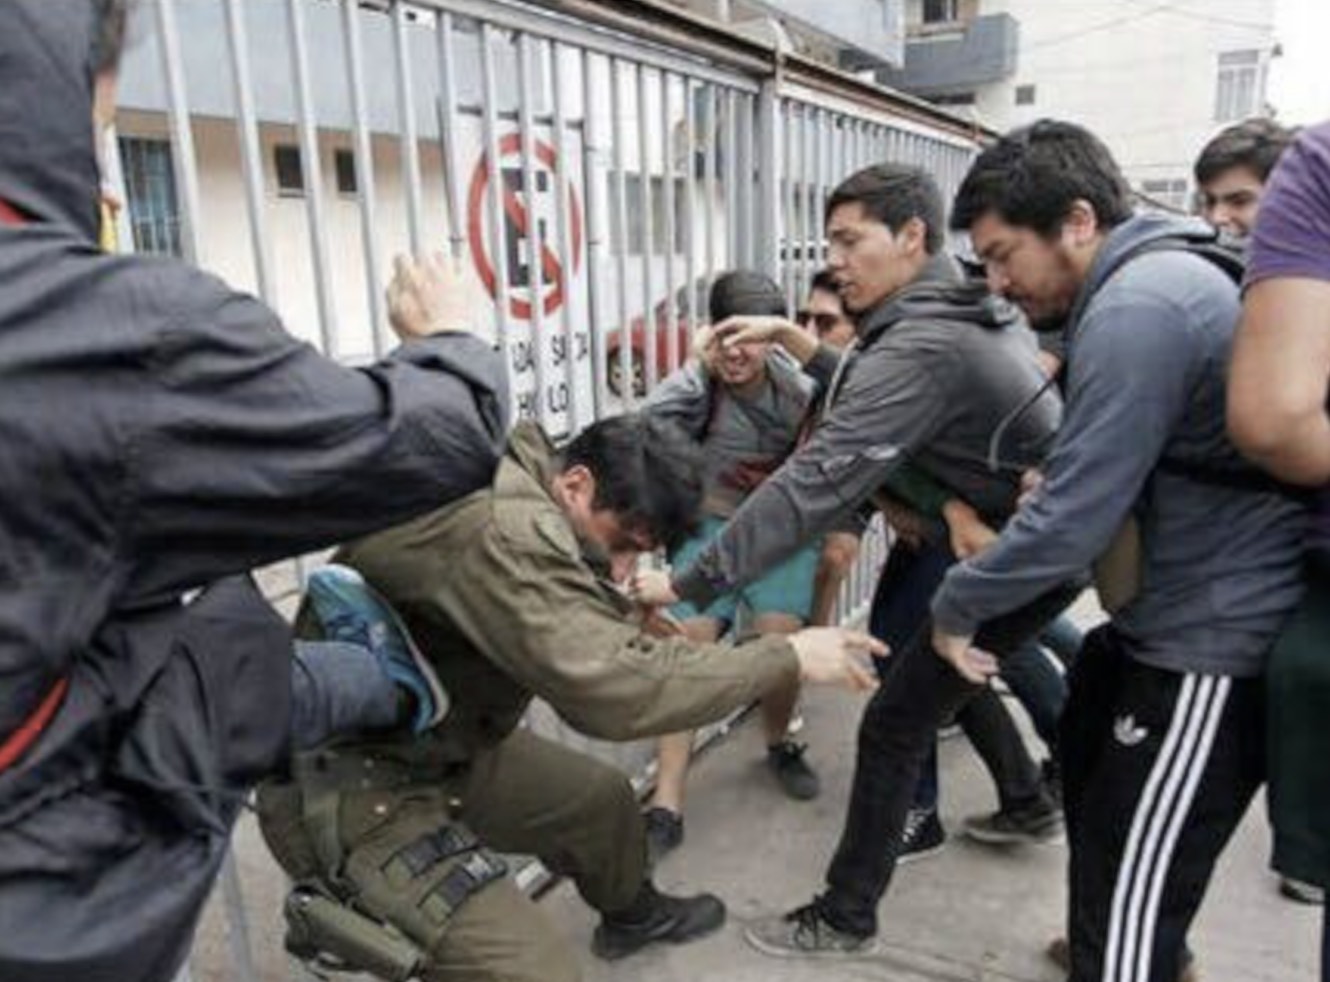 Carabinero golpeado en Chile, Izquierda violenta, Progresismo, Socialismo